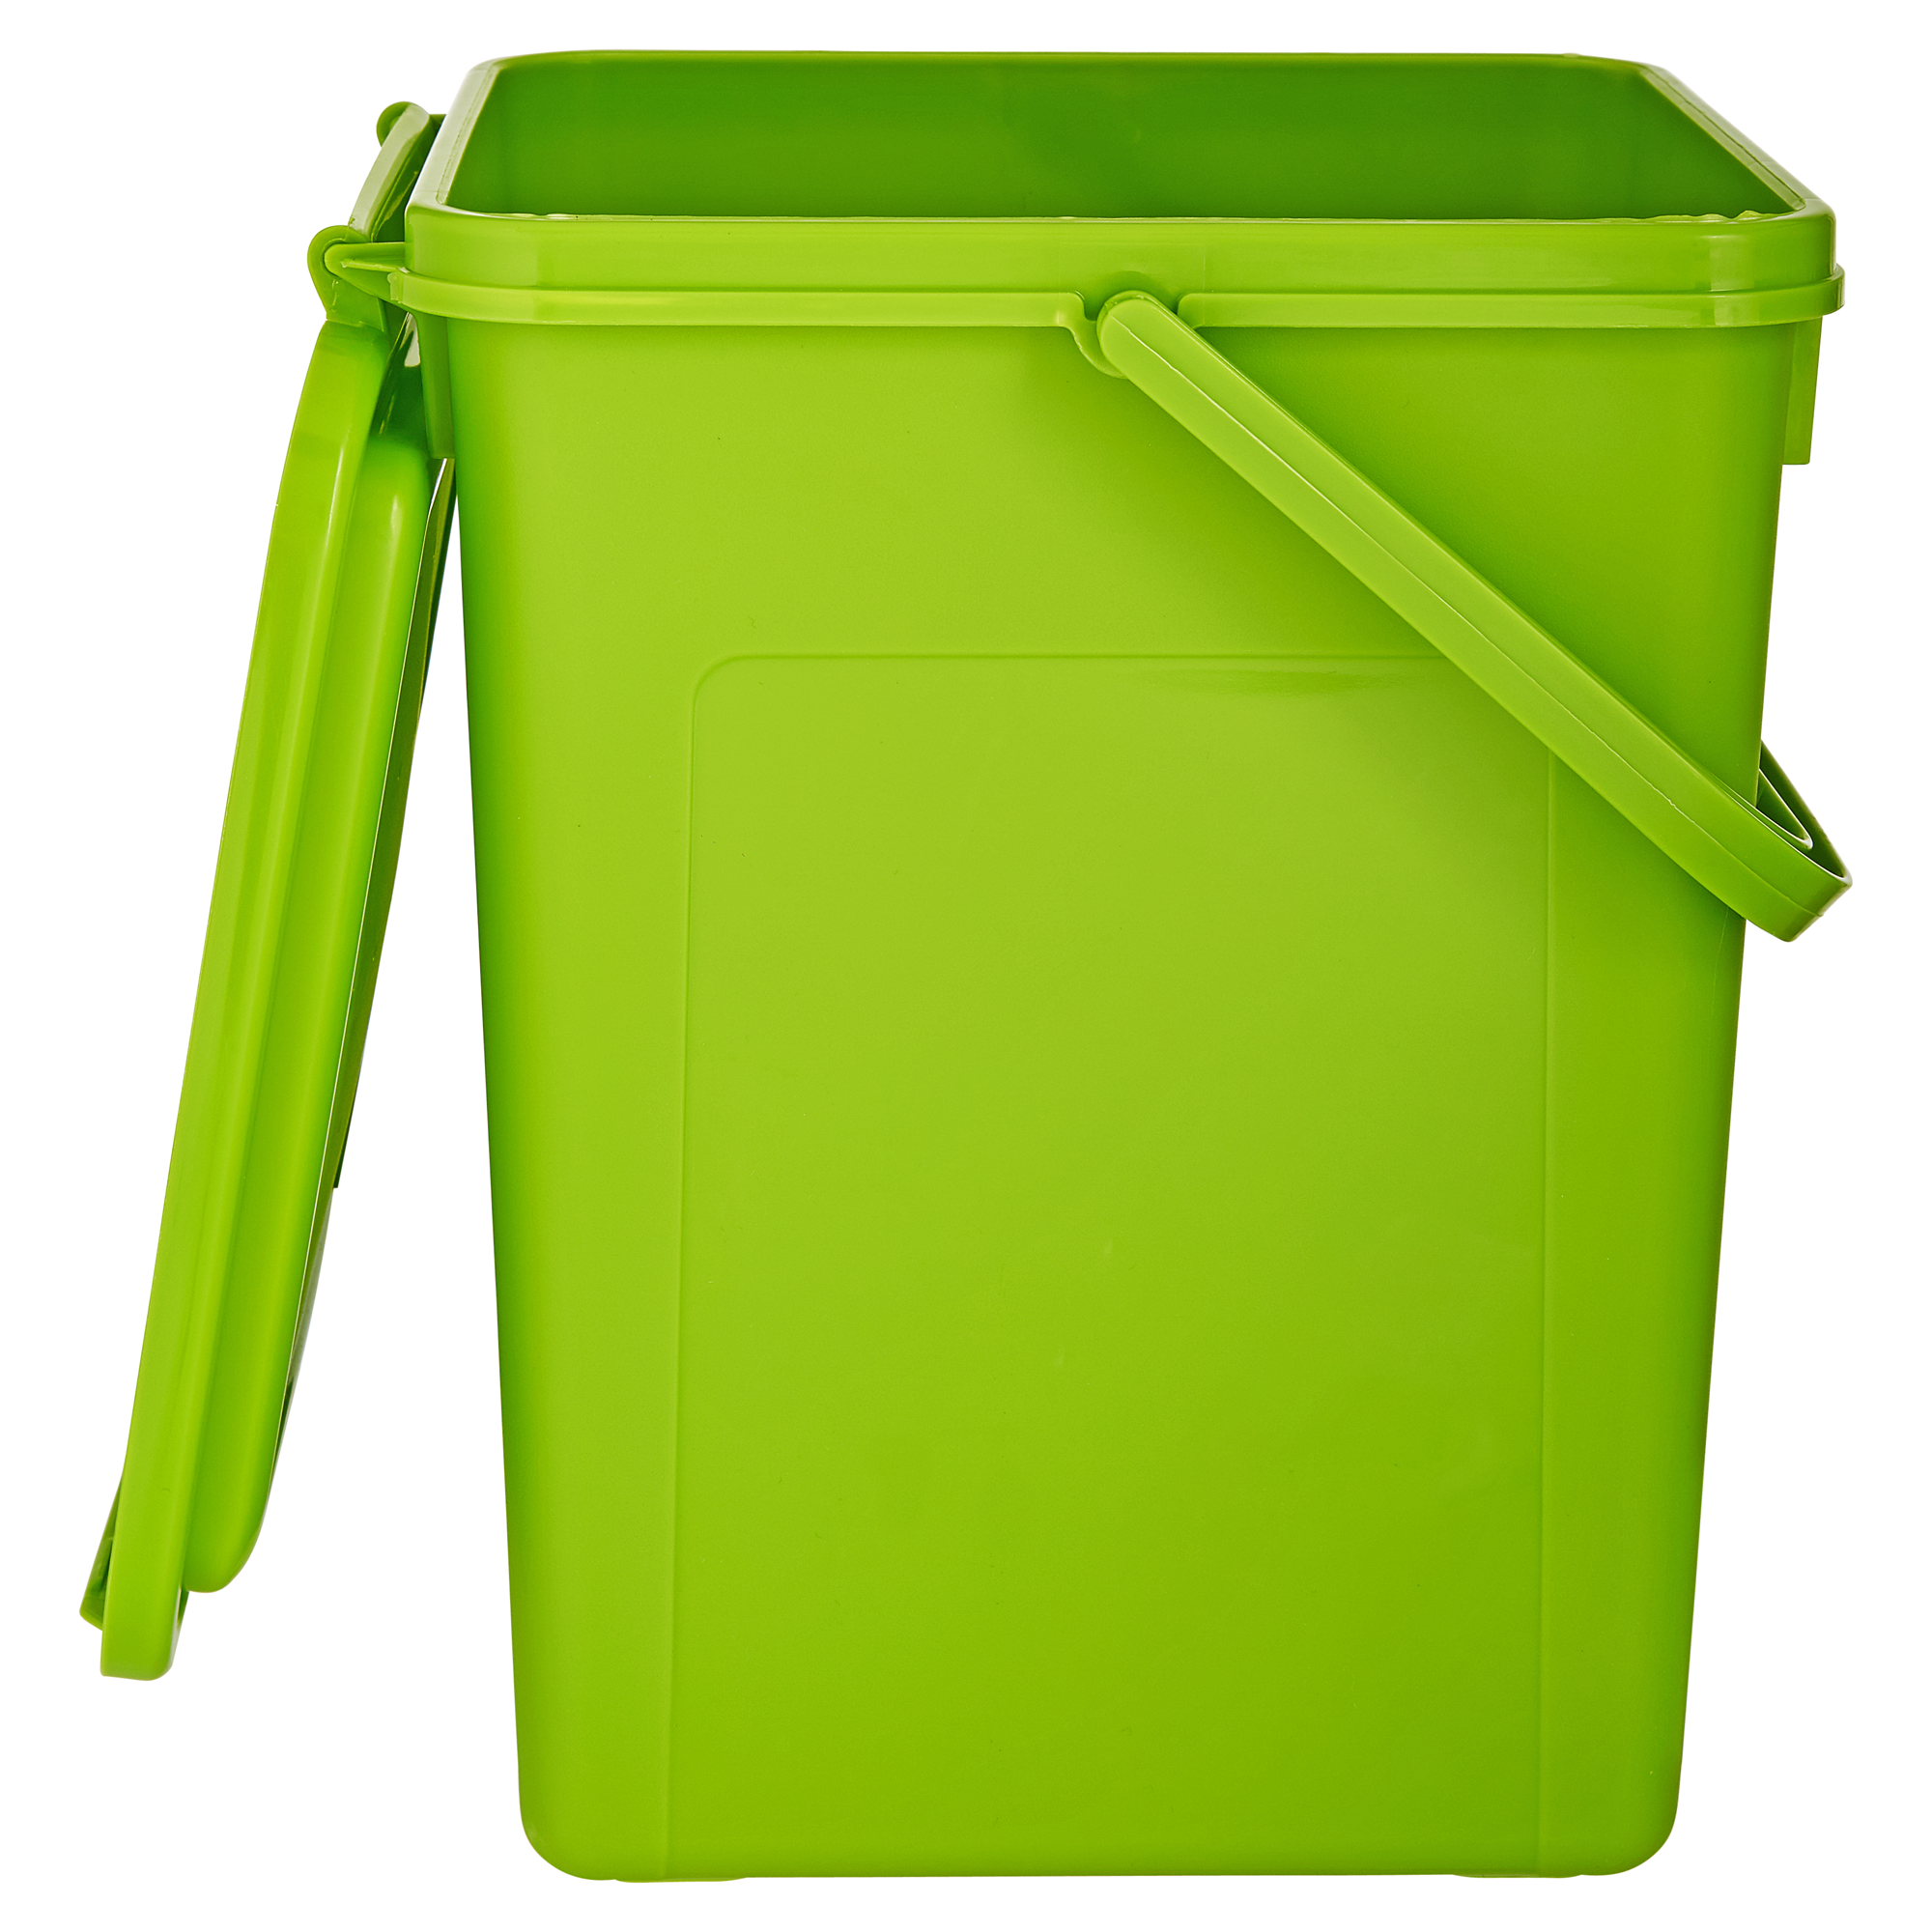 Komposteimer grün 23 x 22,5 x 27,5 cm 8 l + product picture